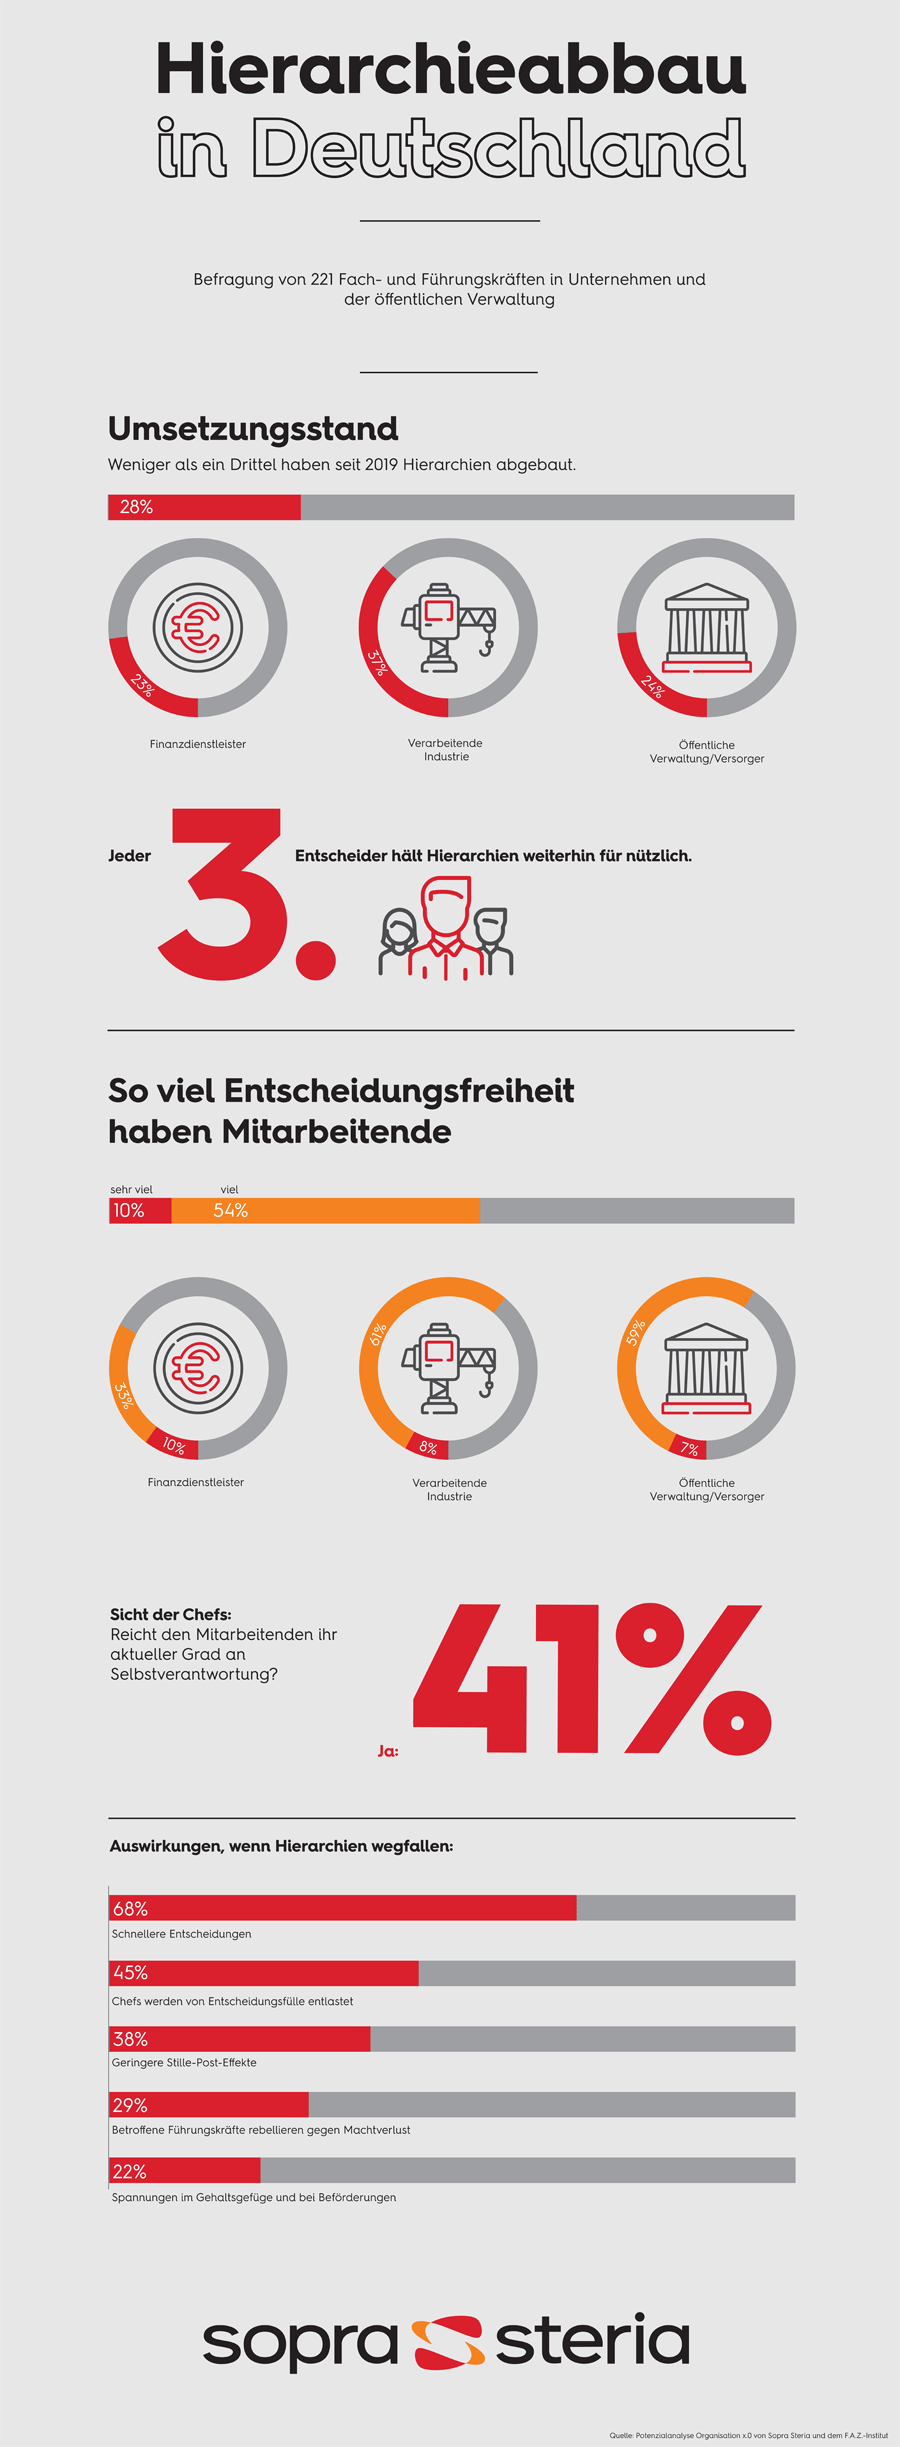 Infografik: Hierarchieabbau in deutschen Unternehmen